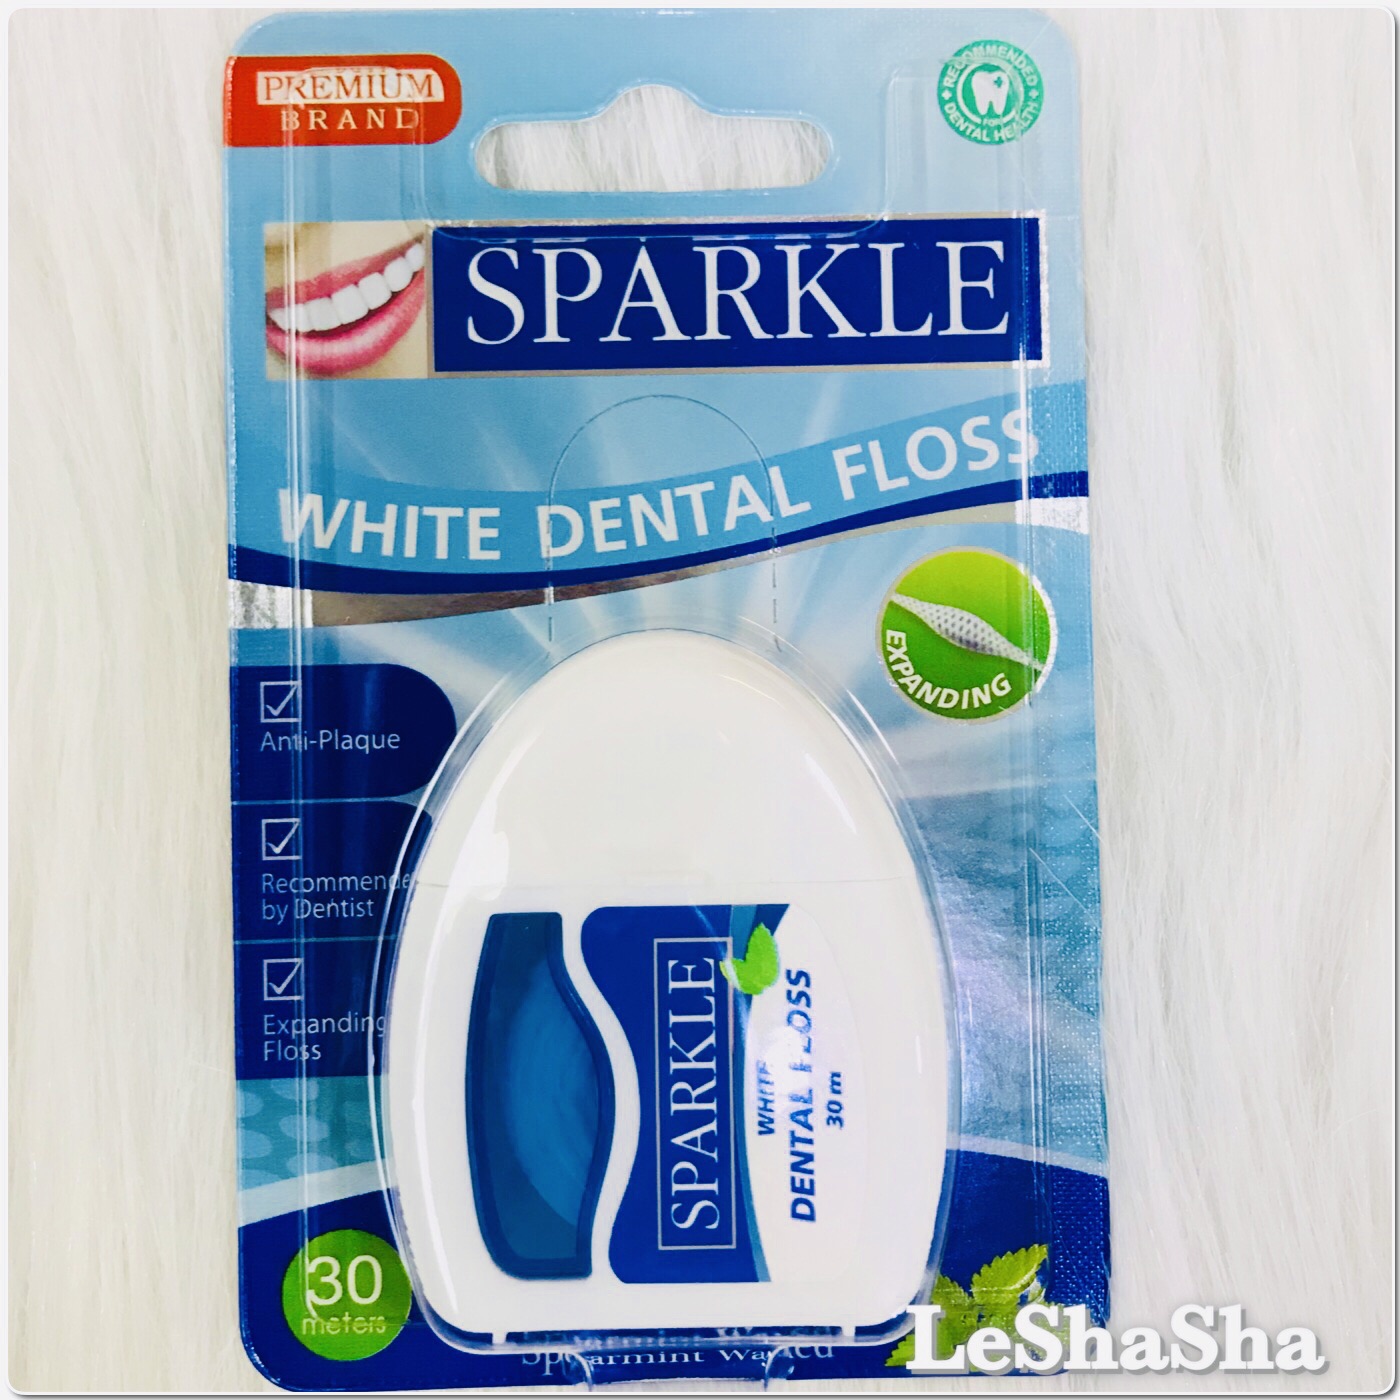 🔥ล็อตใหม่ล่าสุด ผลิต 20/05/21 ส่งไว🔥ไหมขัดฟัน Sparkle White Dental Floss Expanding สปาร์คเคิล ไหมขัดฟัน เอ็กซ์แพนดิ้ง กลิ่นสเปียร์มิ้นท์ ขนาด 30 เมตร LeShaSha